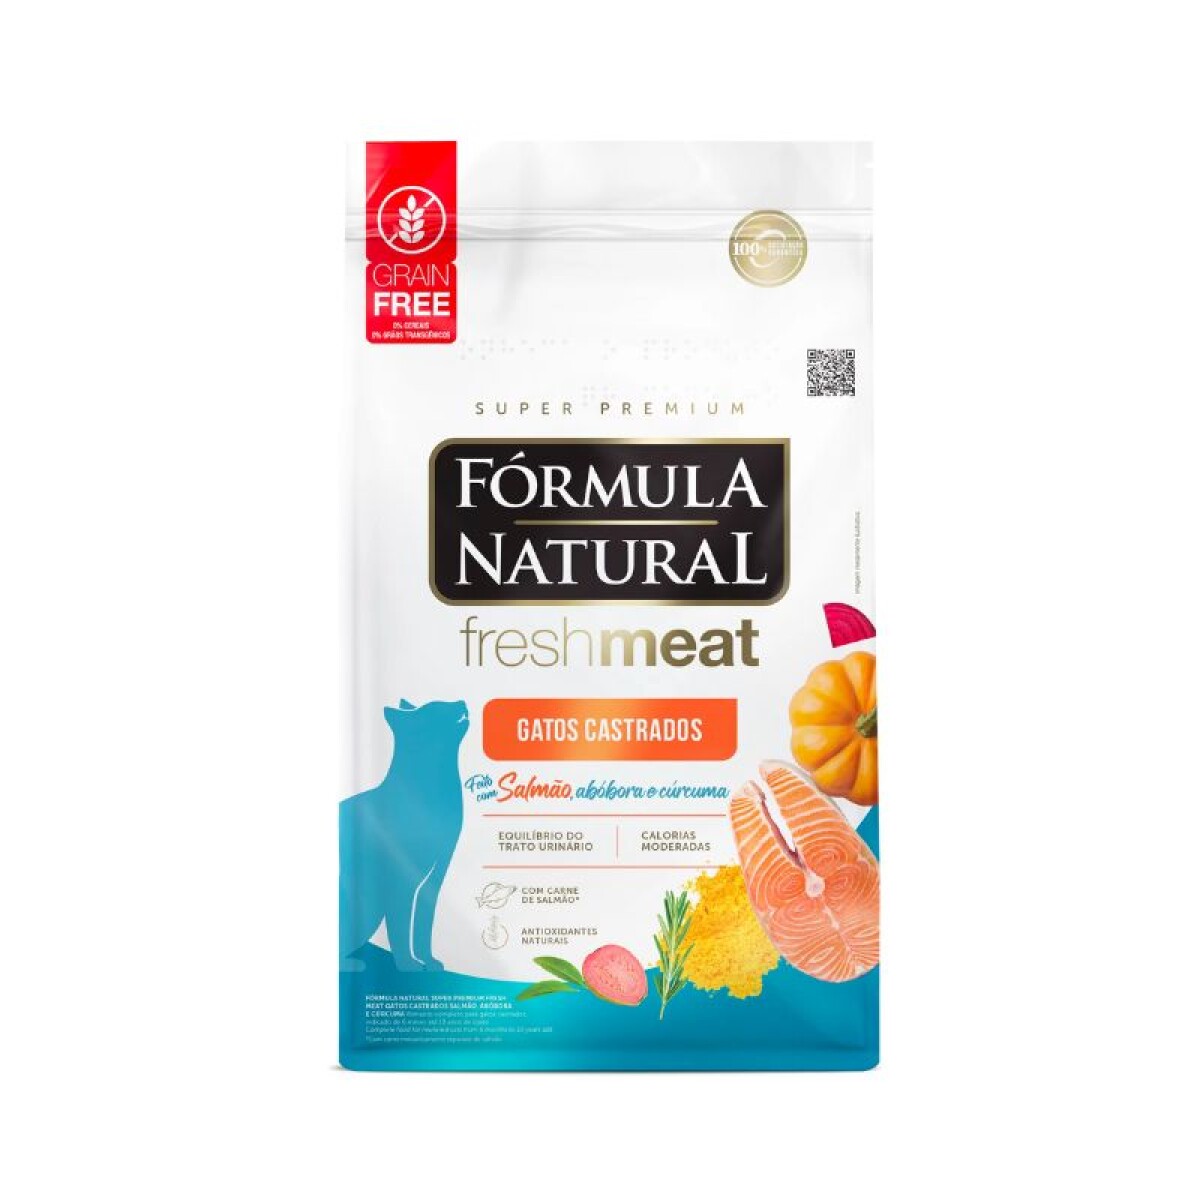 FORMULA NATURAL FRESH MEAT GATO CAST.1KG - Formula Natural Fresh Meat Gato Cast.1kg 